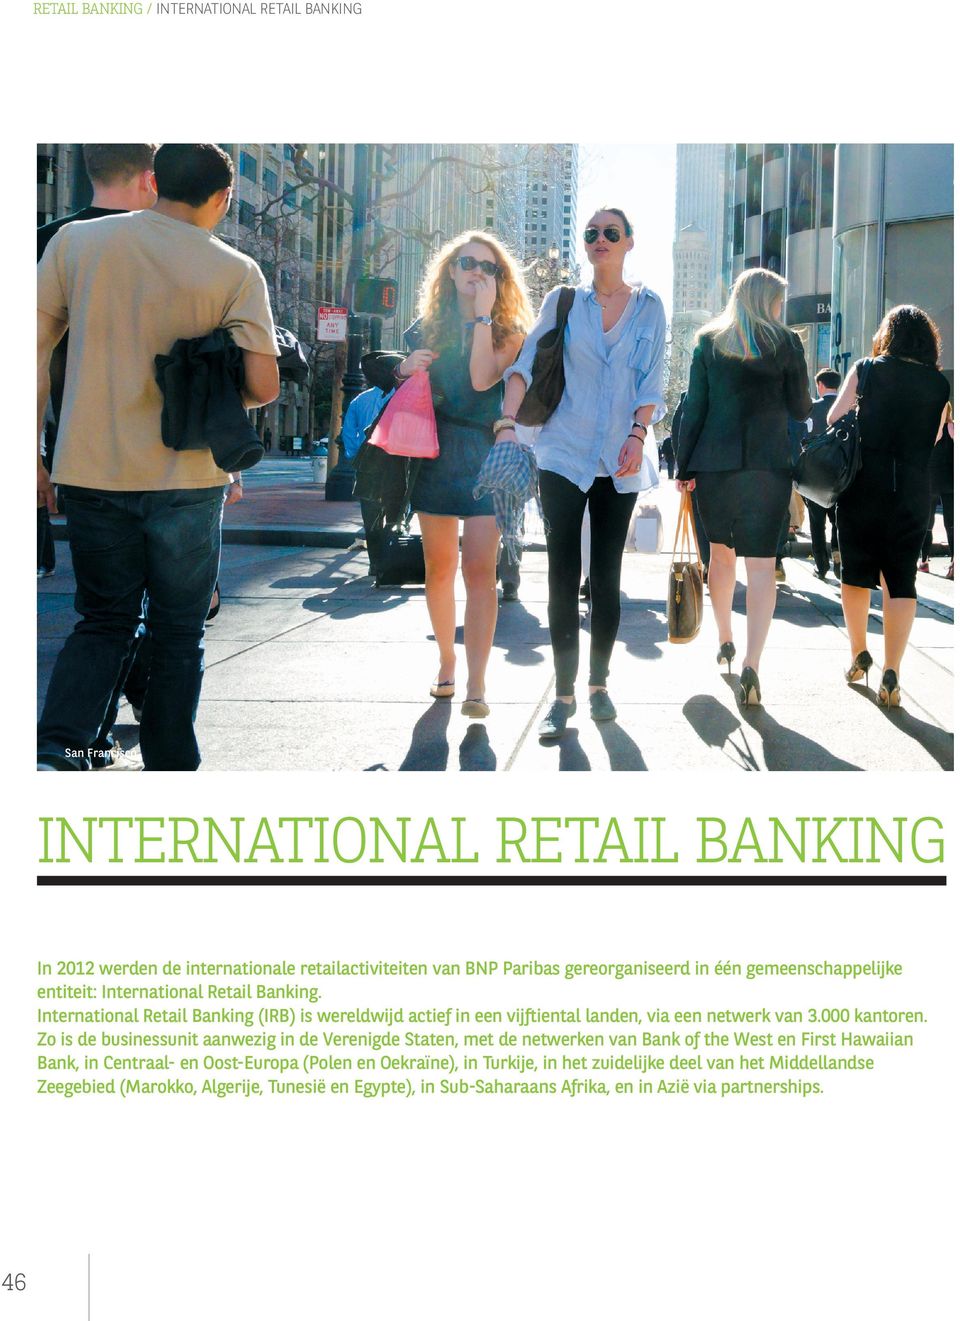 International Retail Banking (IRB) is wereldwijd actief in een vijftiental landen, via een netwerk van 3.000 kantoren.